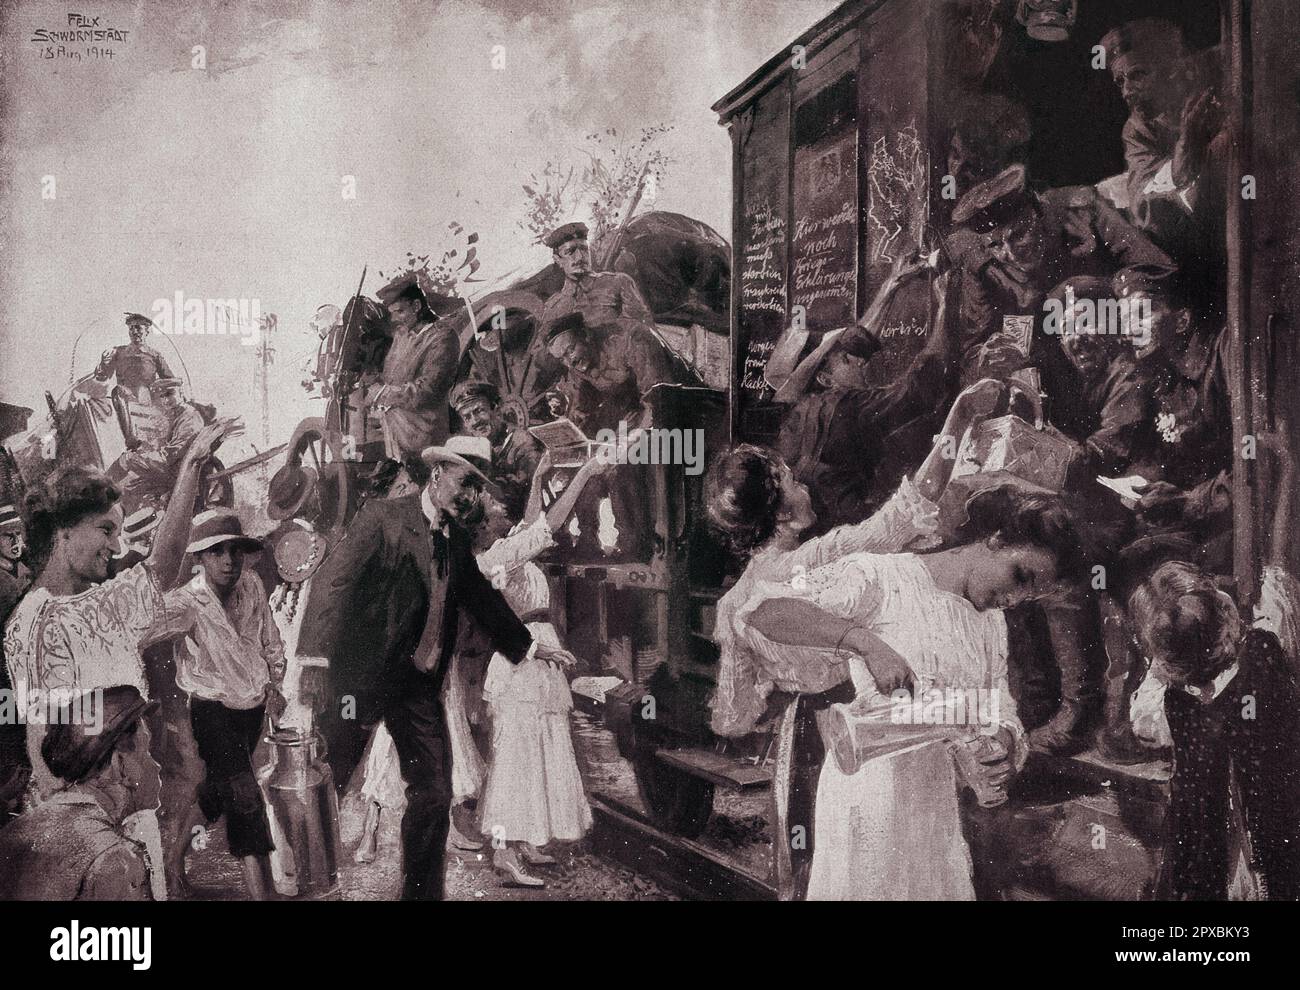 Erster Weltkrieg Deutschland im Krieg. Ein Vergnügen für vorbeifahrende Soldaten am Leipziger Vorstadtbahnhof. Autor Felix Schwormstadt. Stockfoto